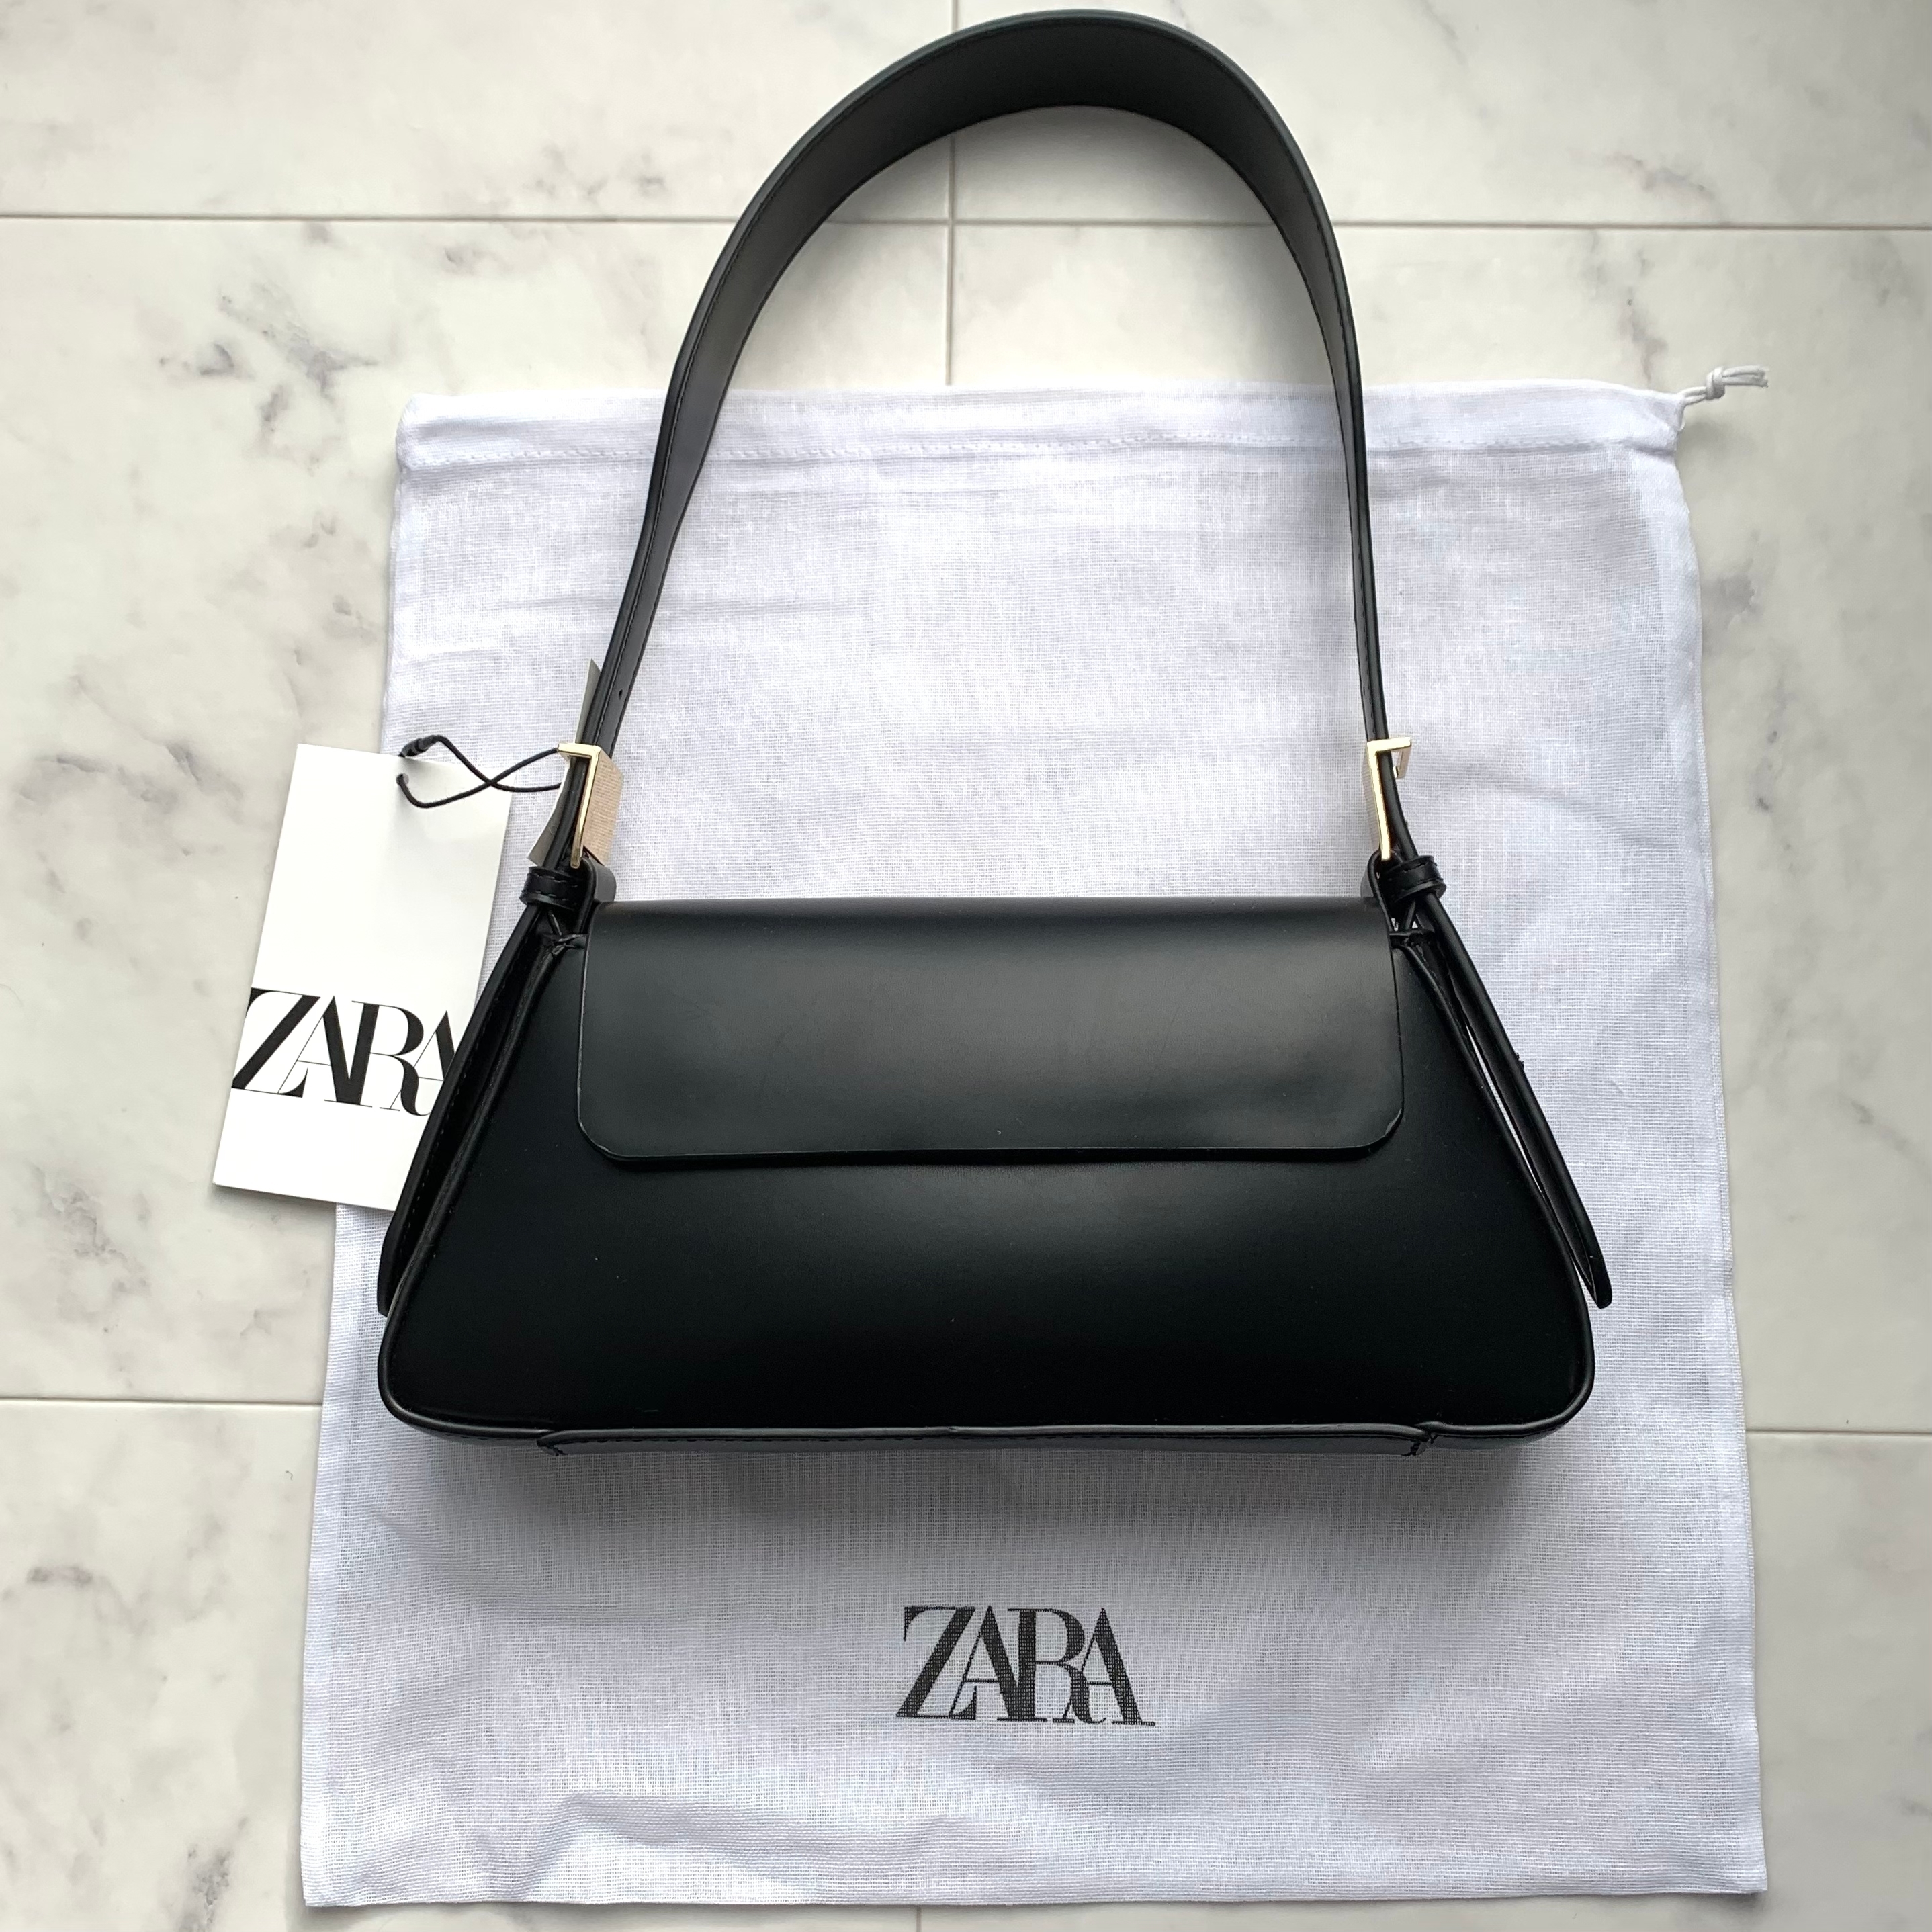 ZARA（ザラ）のおすすめのバッグ「フラップ ミニマル ショルダーバック」